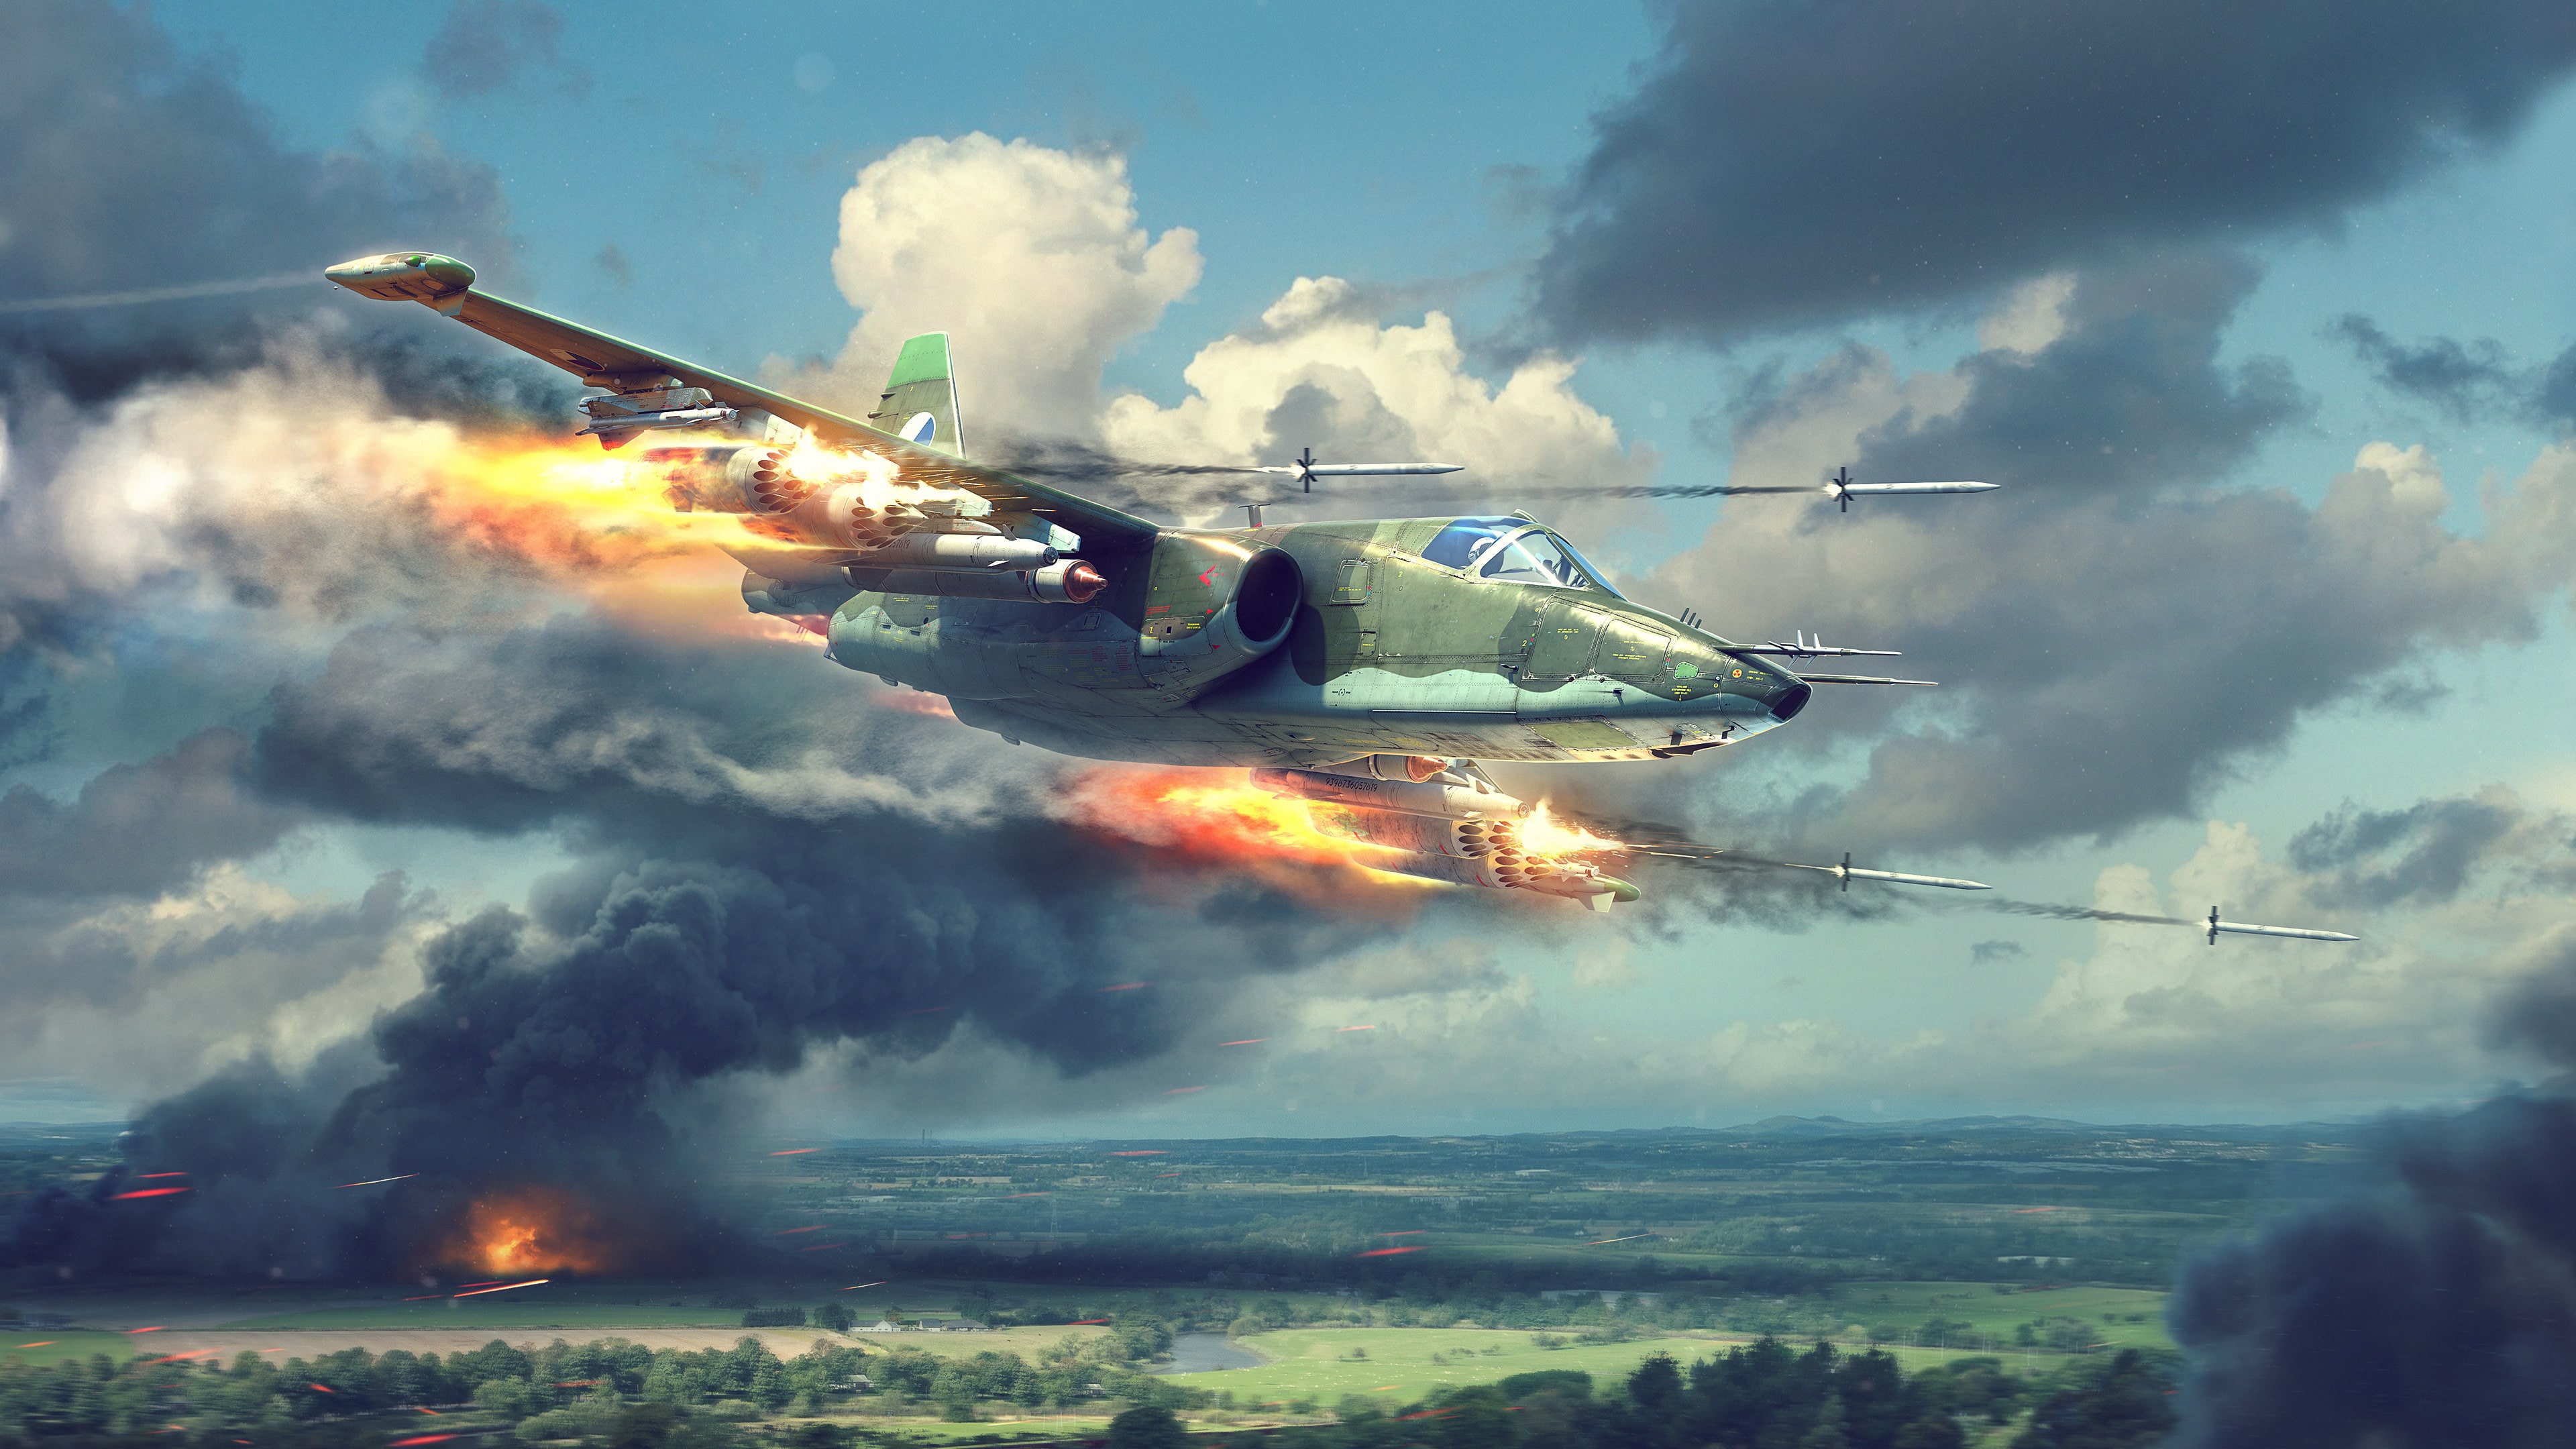 General 3840x2160 Sukhoi aircraft sky clouds war rocket fire smoke artwork SU-25 Frogfoot military Czechoslovak Air Force War Thunder